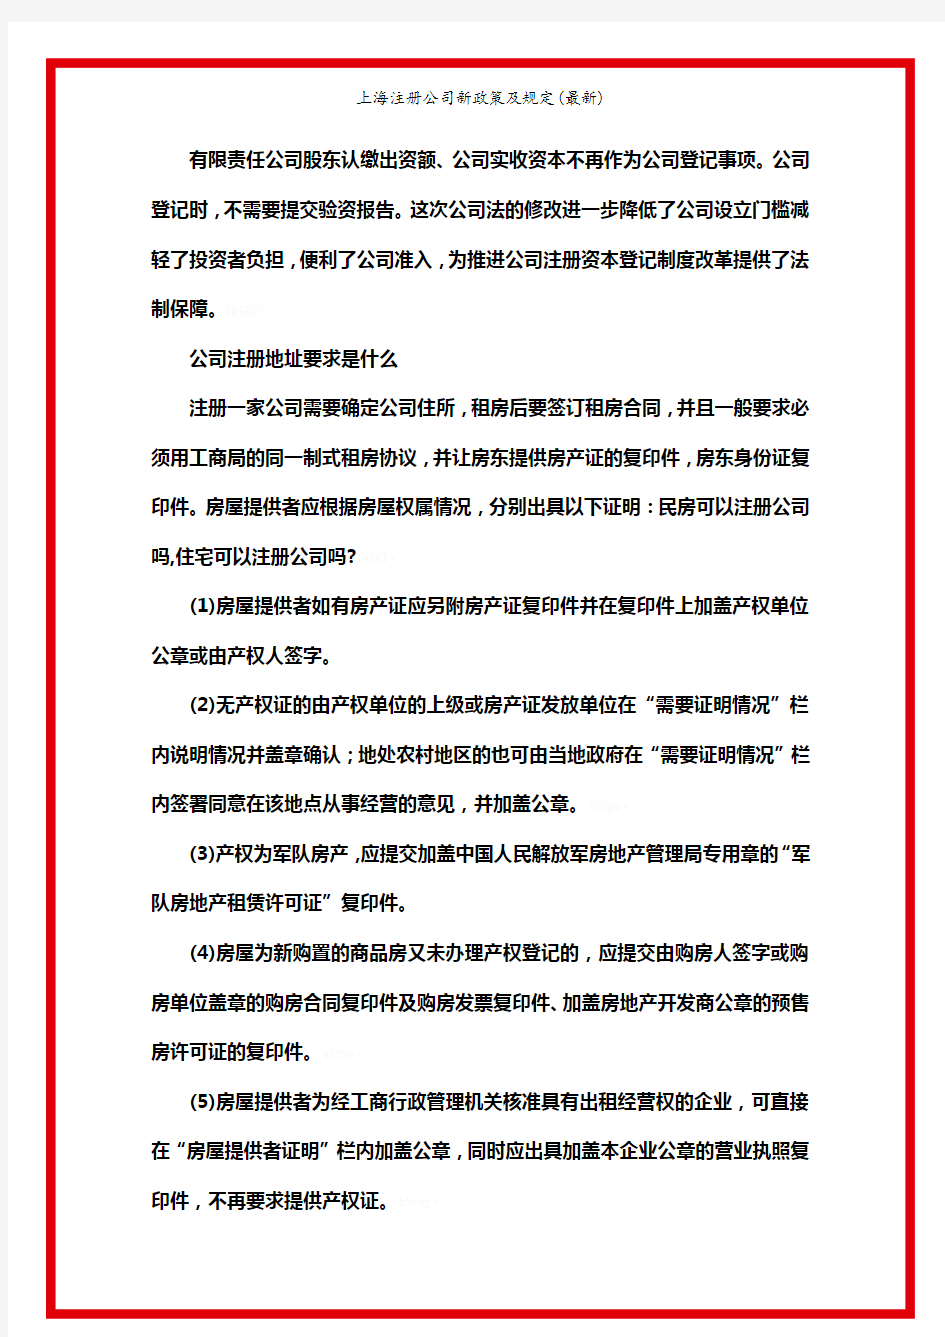 上海注册公司新政策及规定(最新)